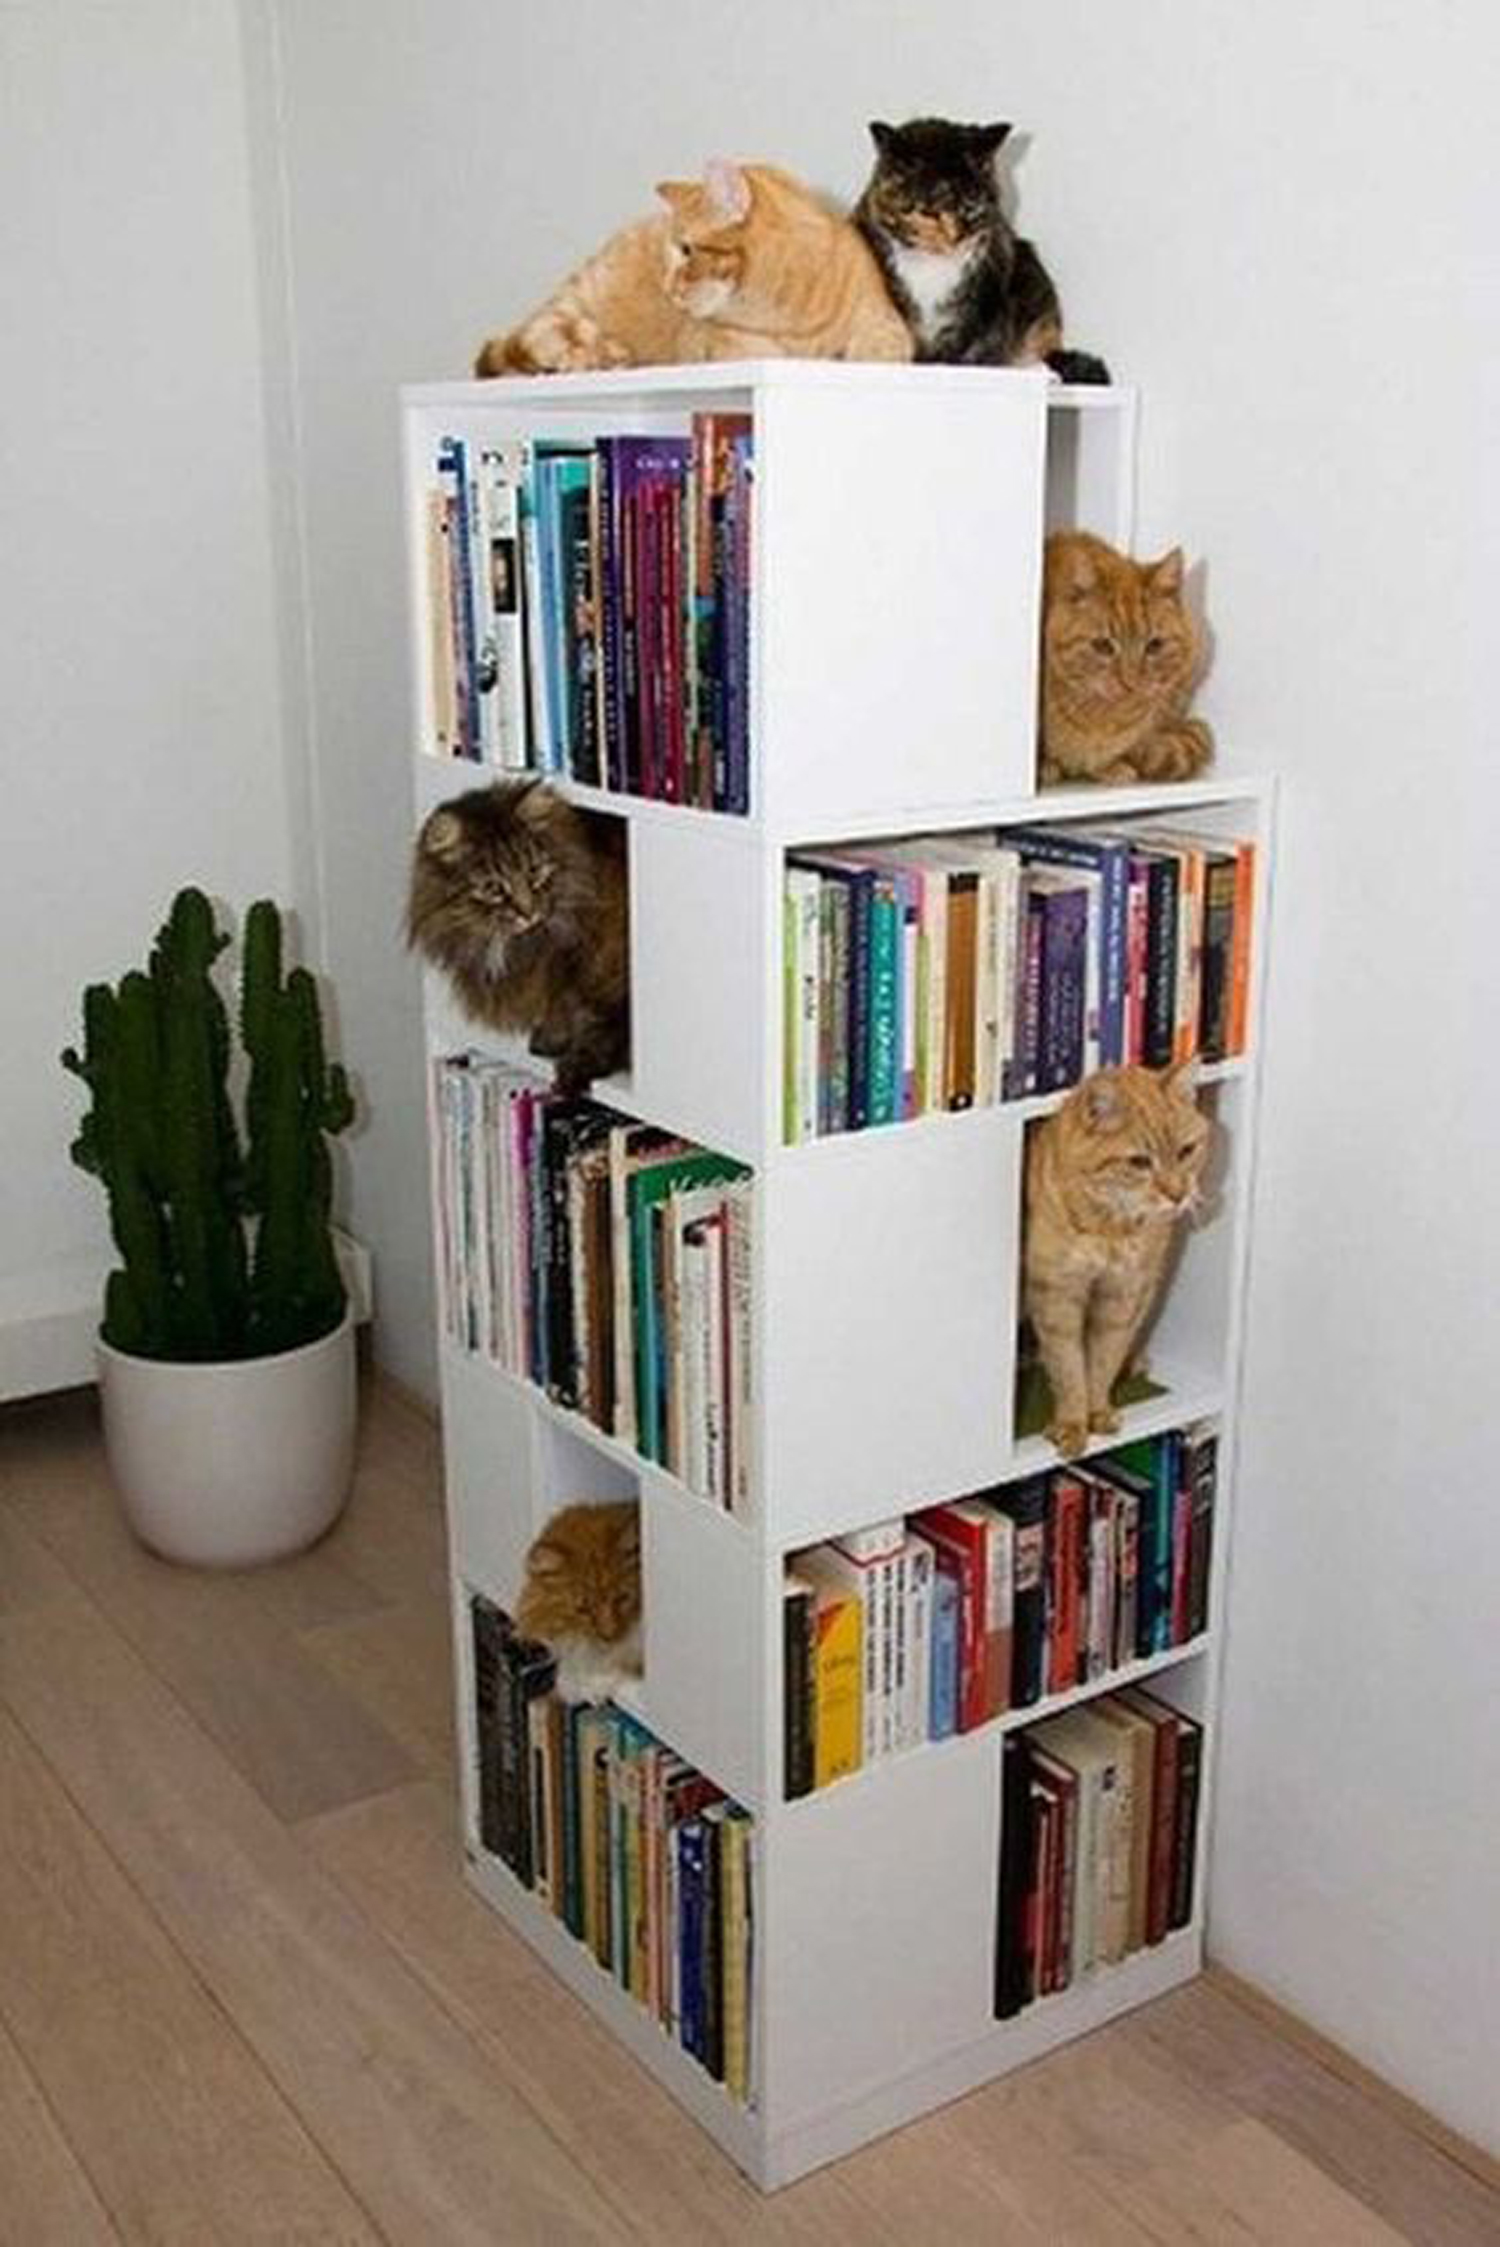 Αν έχεις περισσότερες γάτες από ότι βιβλία